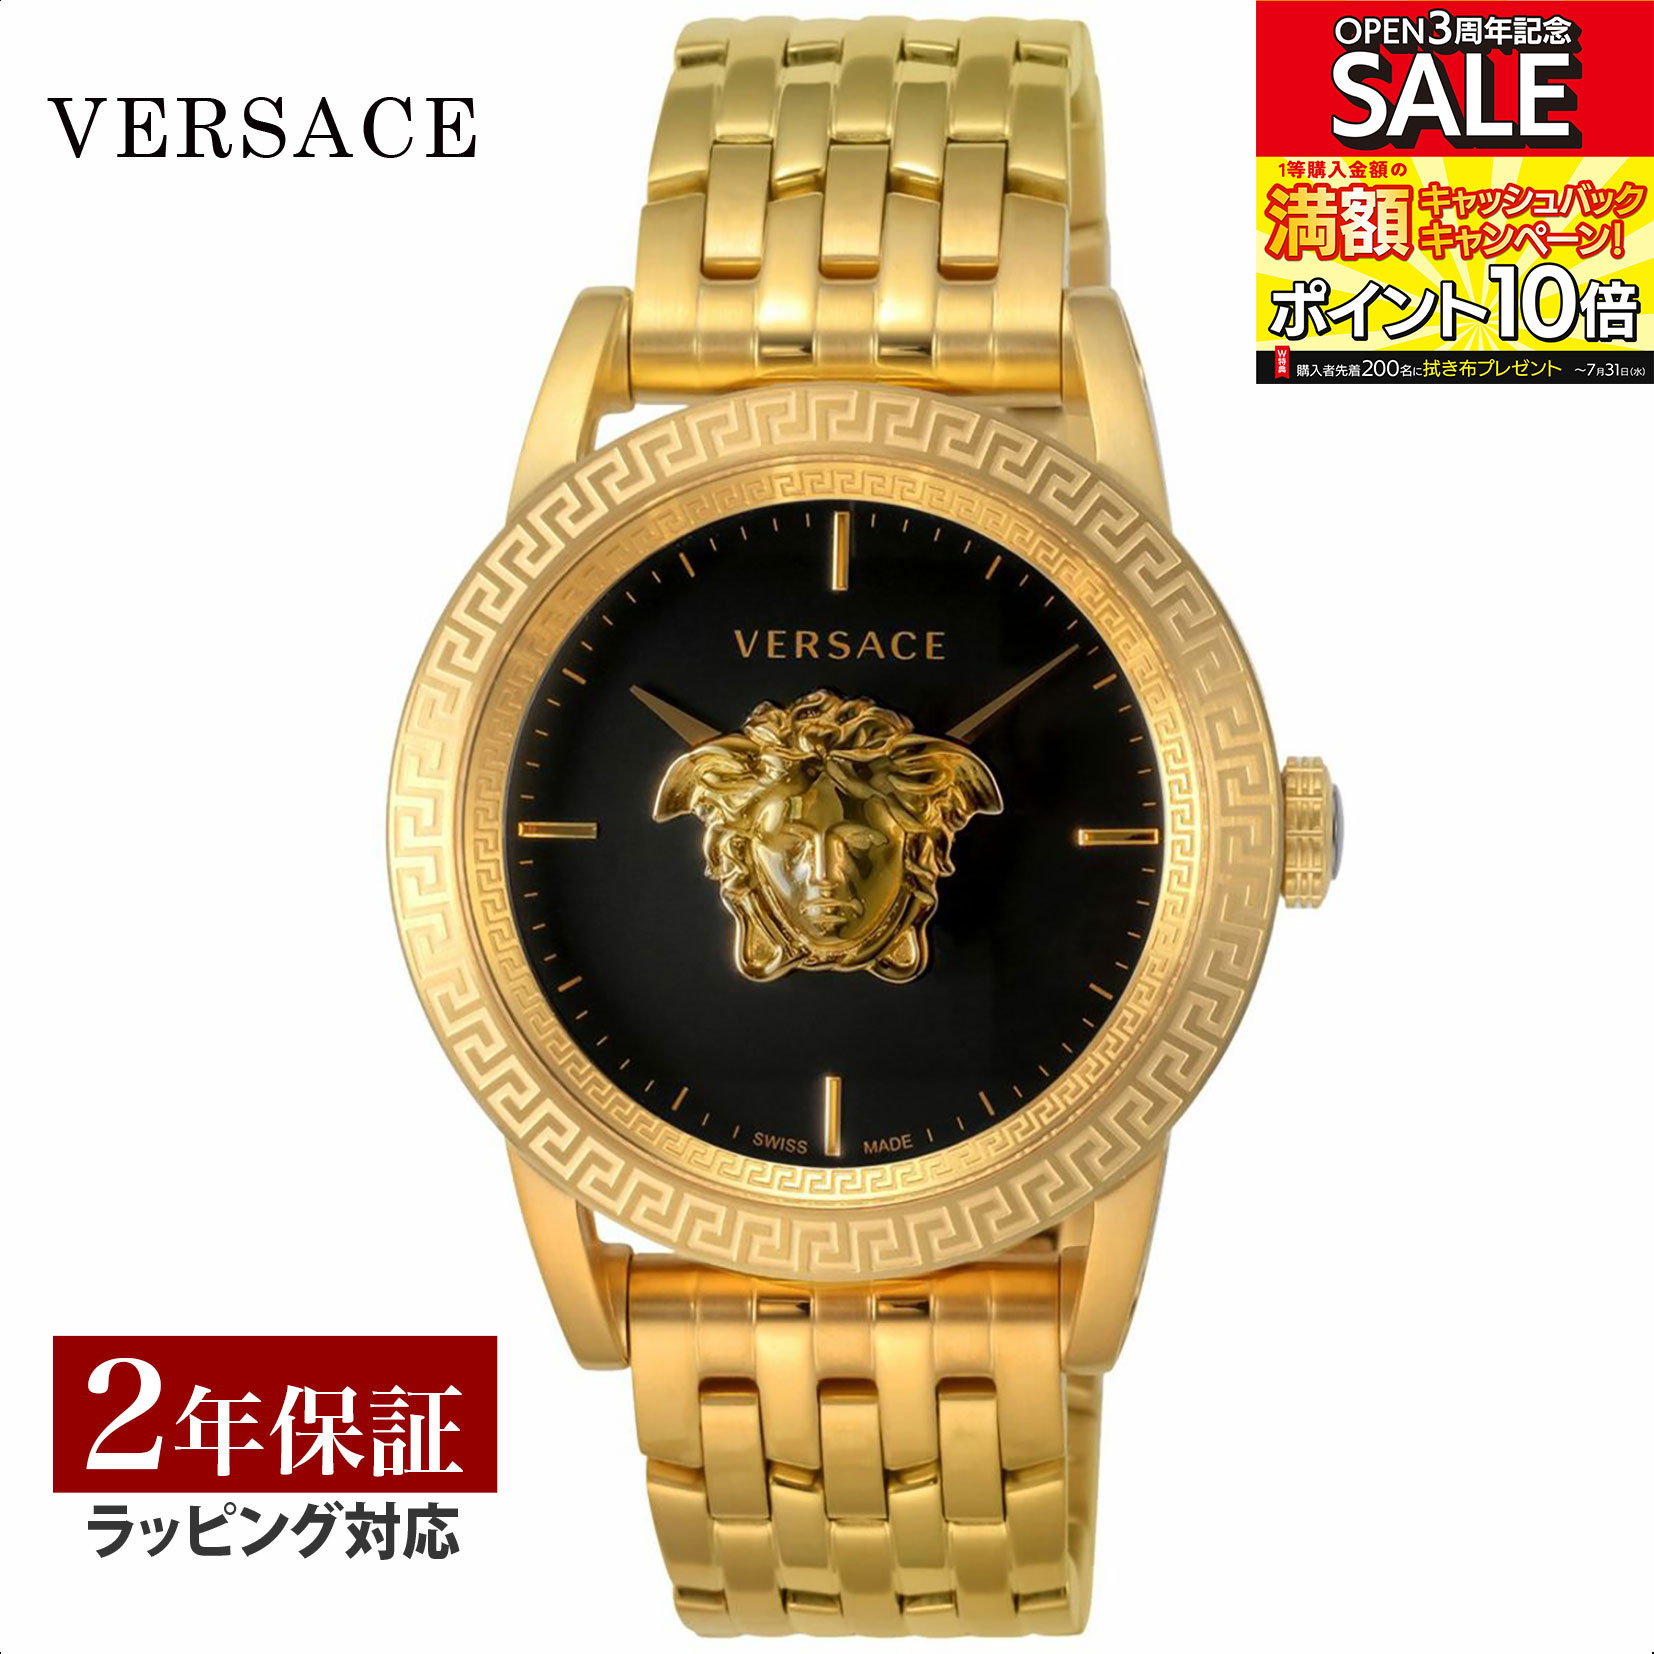 ヴェルサーチェ 腕時計（メンズ） ヴェルサーチェ ヴェルサーチ VERSACE メンズ 時計 PALAZZO EMPIRE クォーツ ブラック VERD00819 時計 腕時計 高級腕時計 ブランド